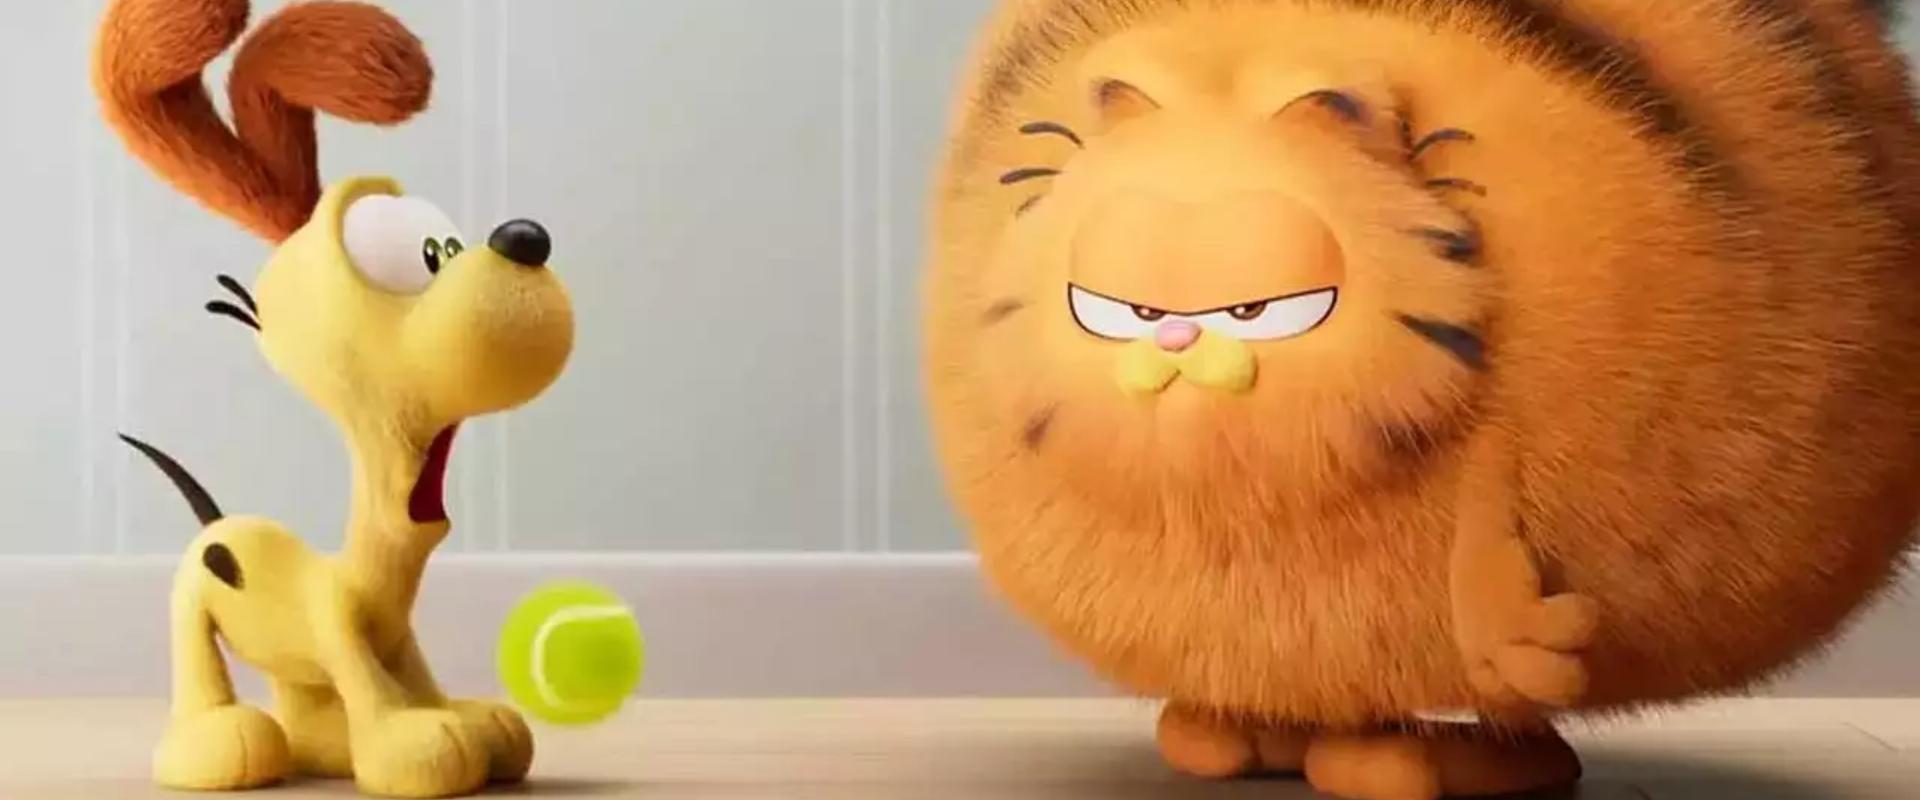 Ledöbbent a közönség, miután verekedés tört ki az új Garfield-film vetítésén